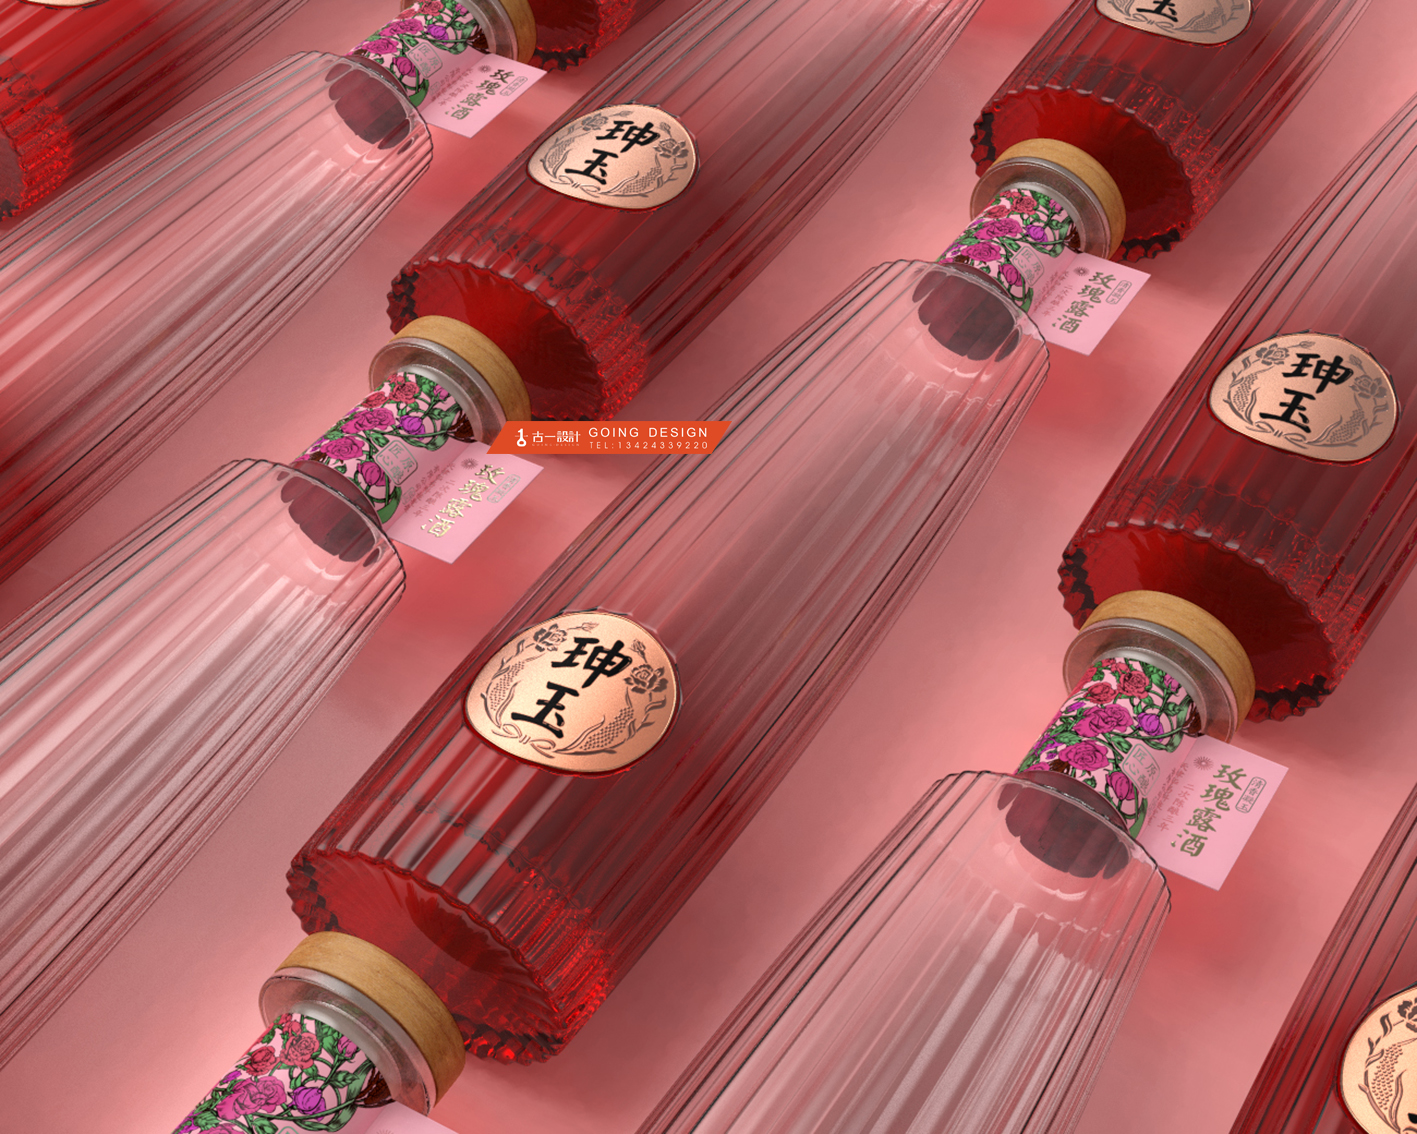 珅玉玫瑰露酒包装设计，天津名酒玫瑰露酒瓶型设计包装设计图片